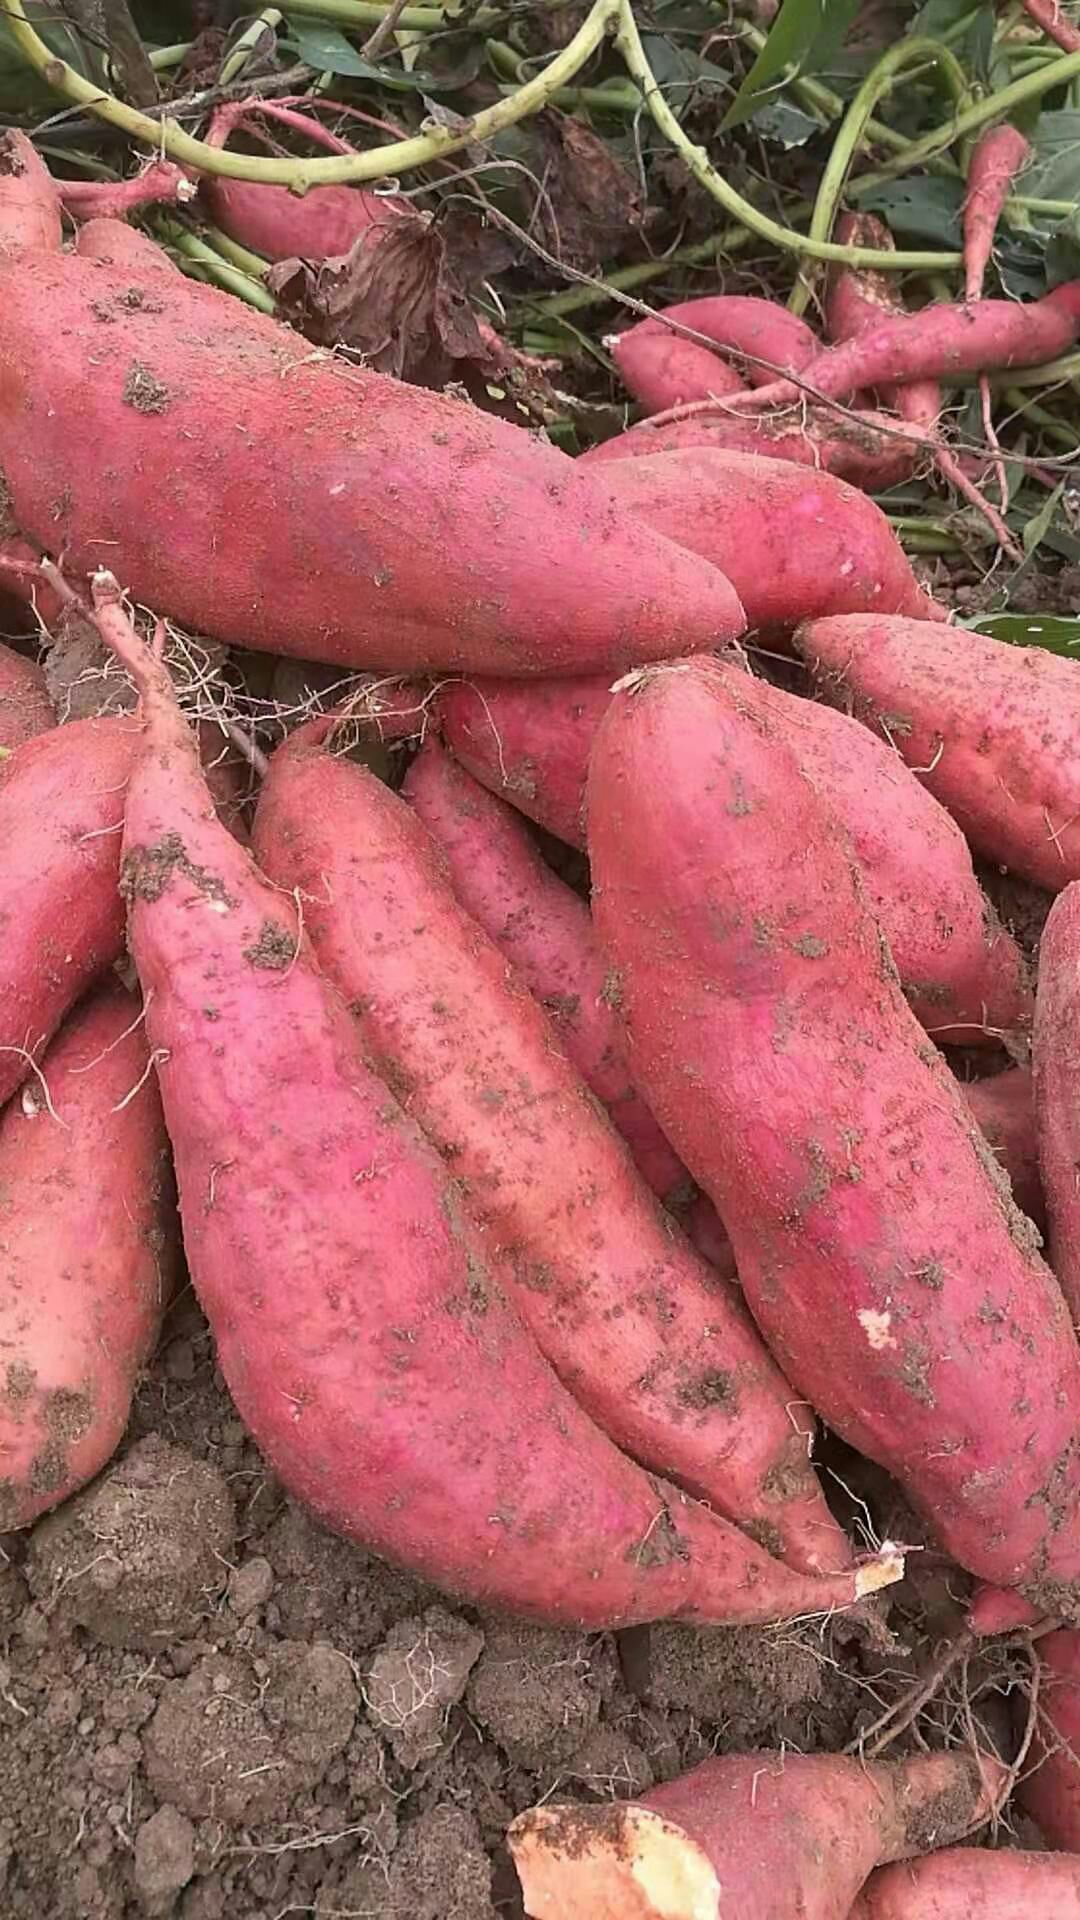 颍上县六十铺马小村现有10吨西瓜红红薯在售,单果重量3两以上